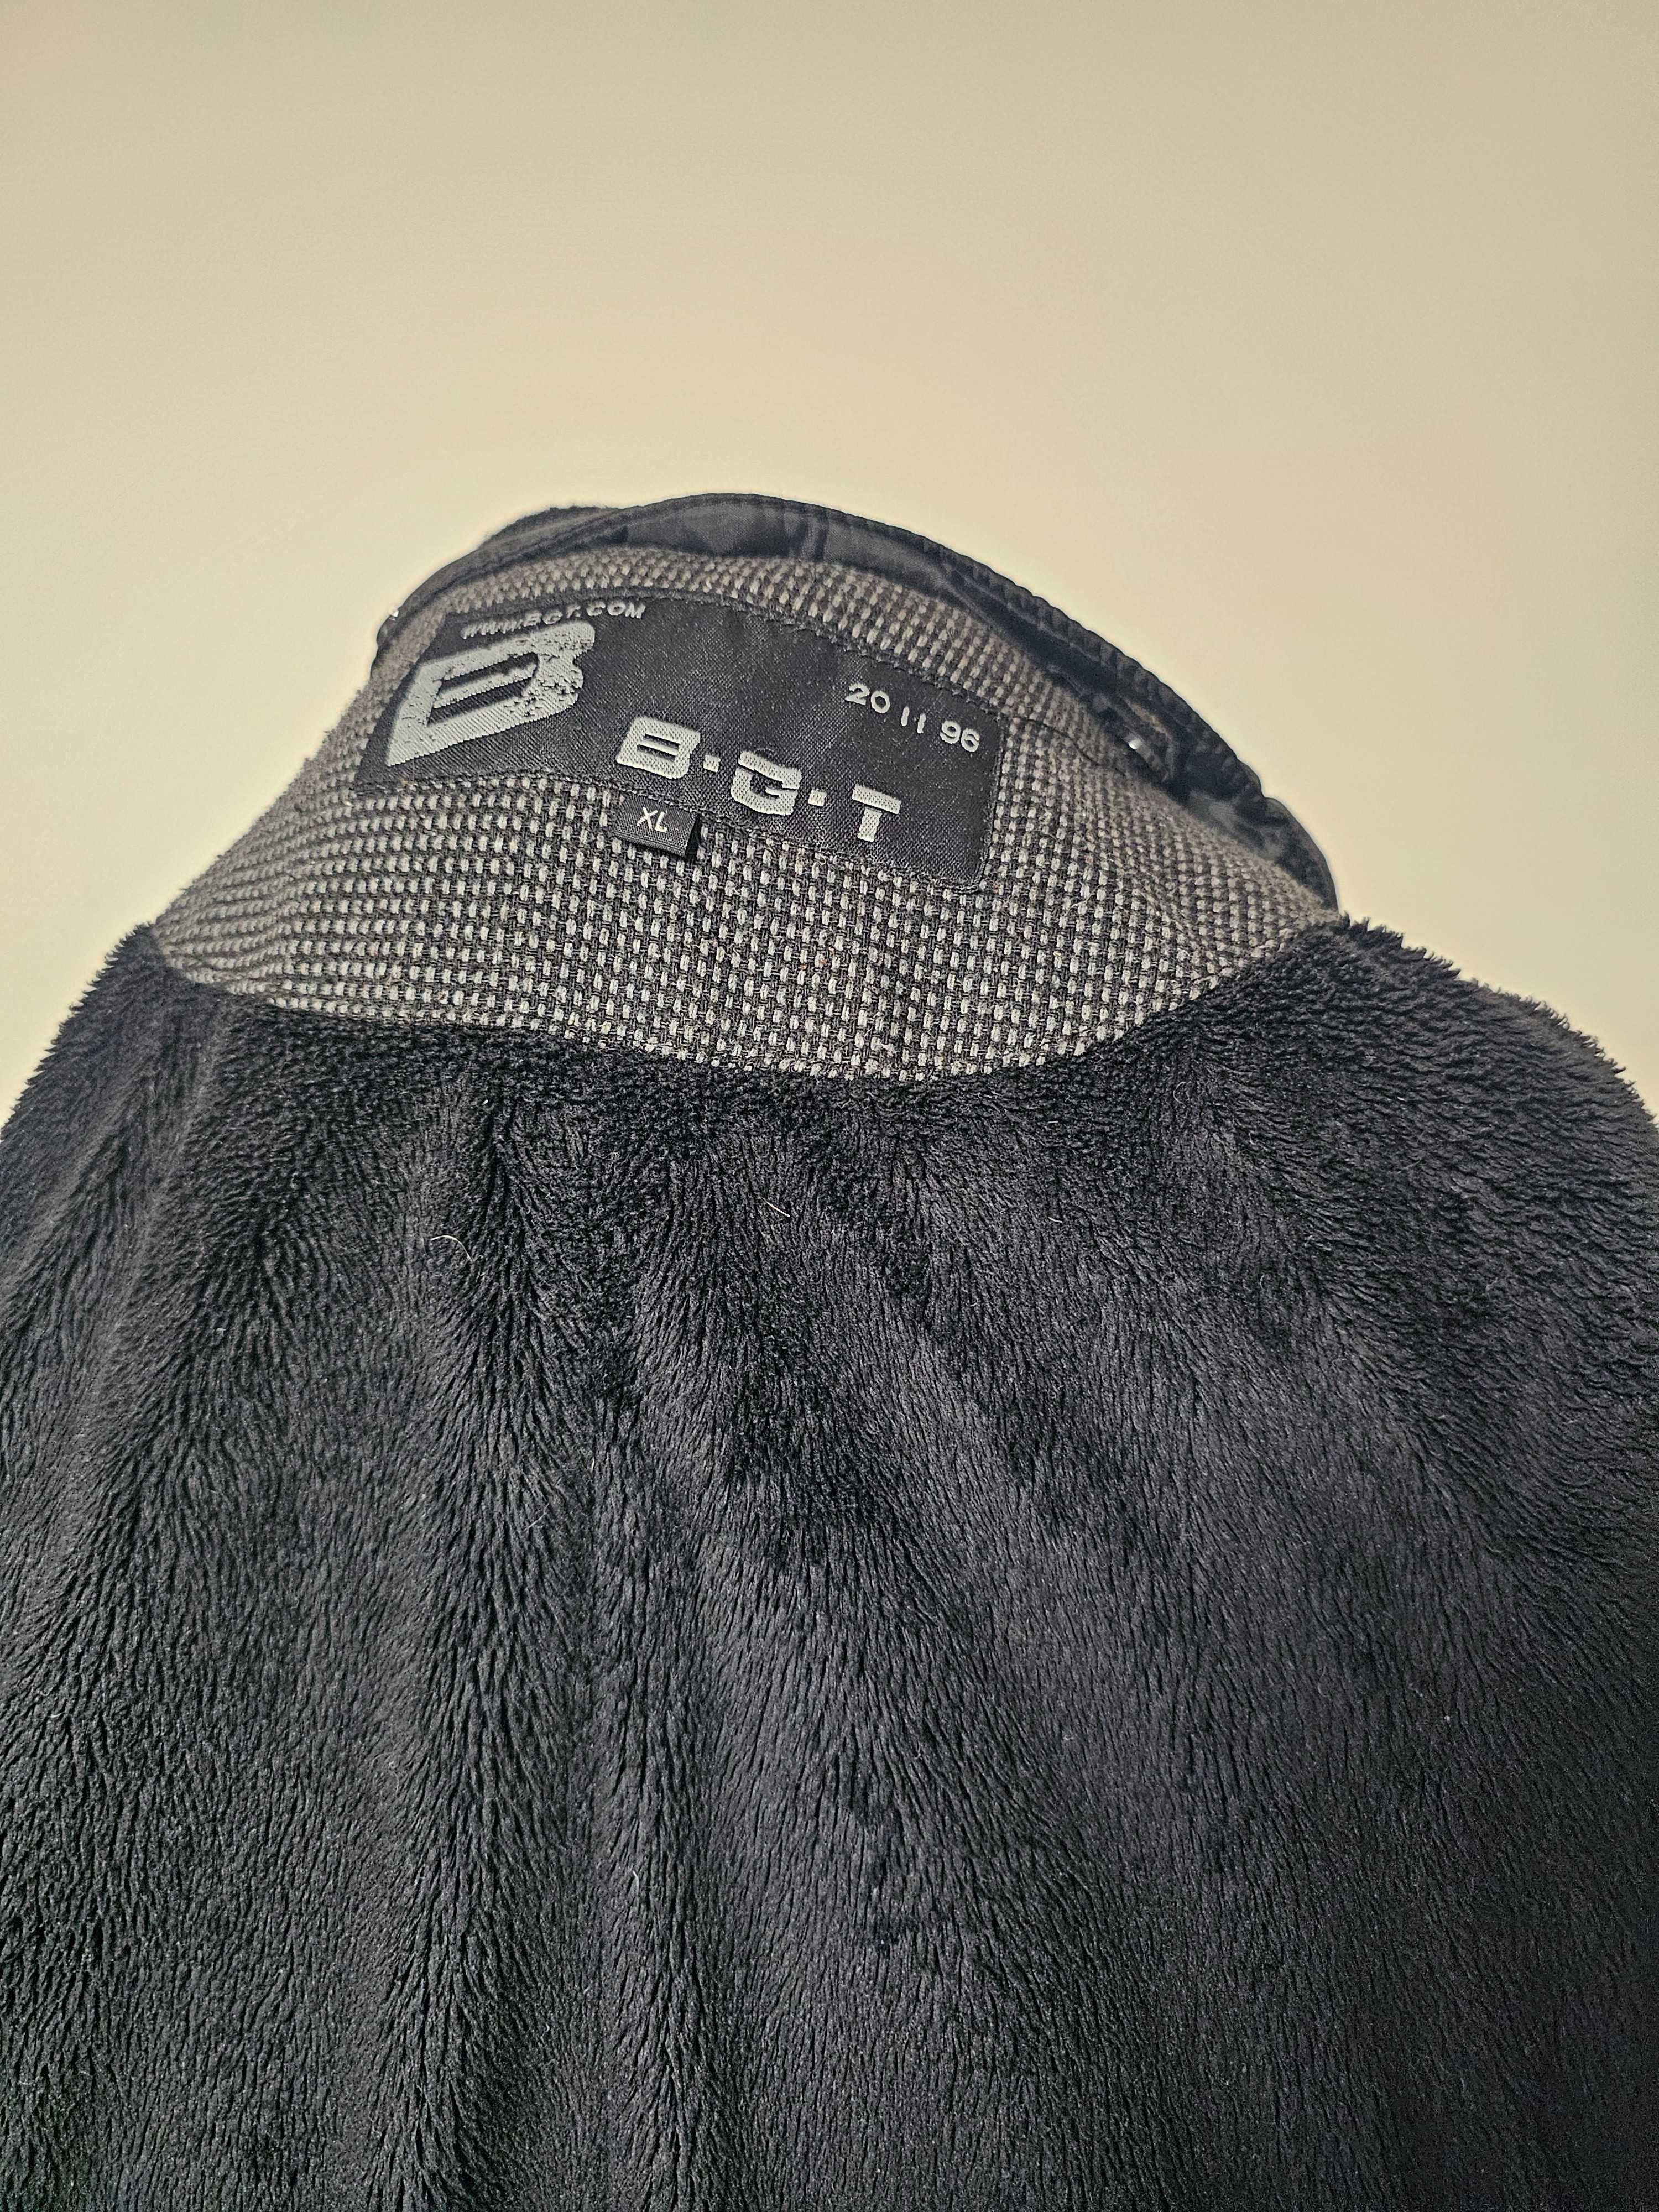 Płaszcz męski z podpinką polarową BGT rozmiar XL